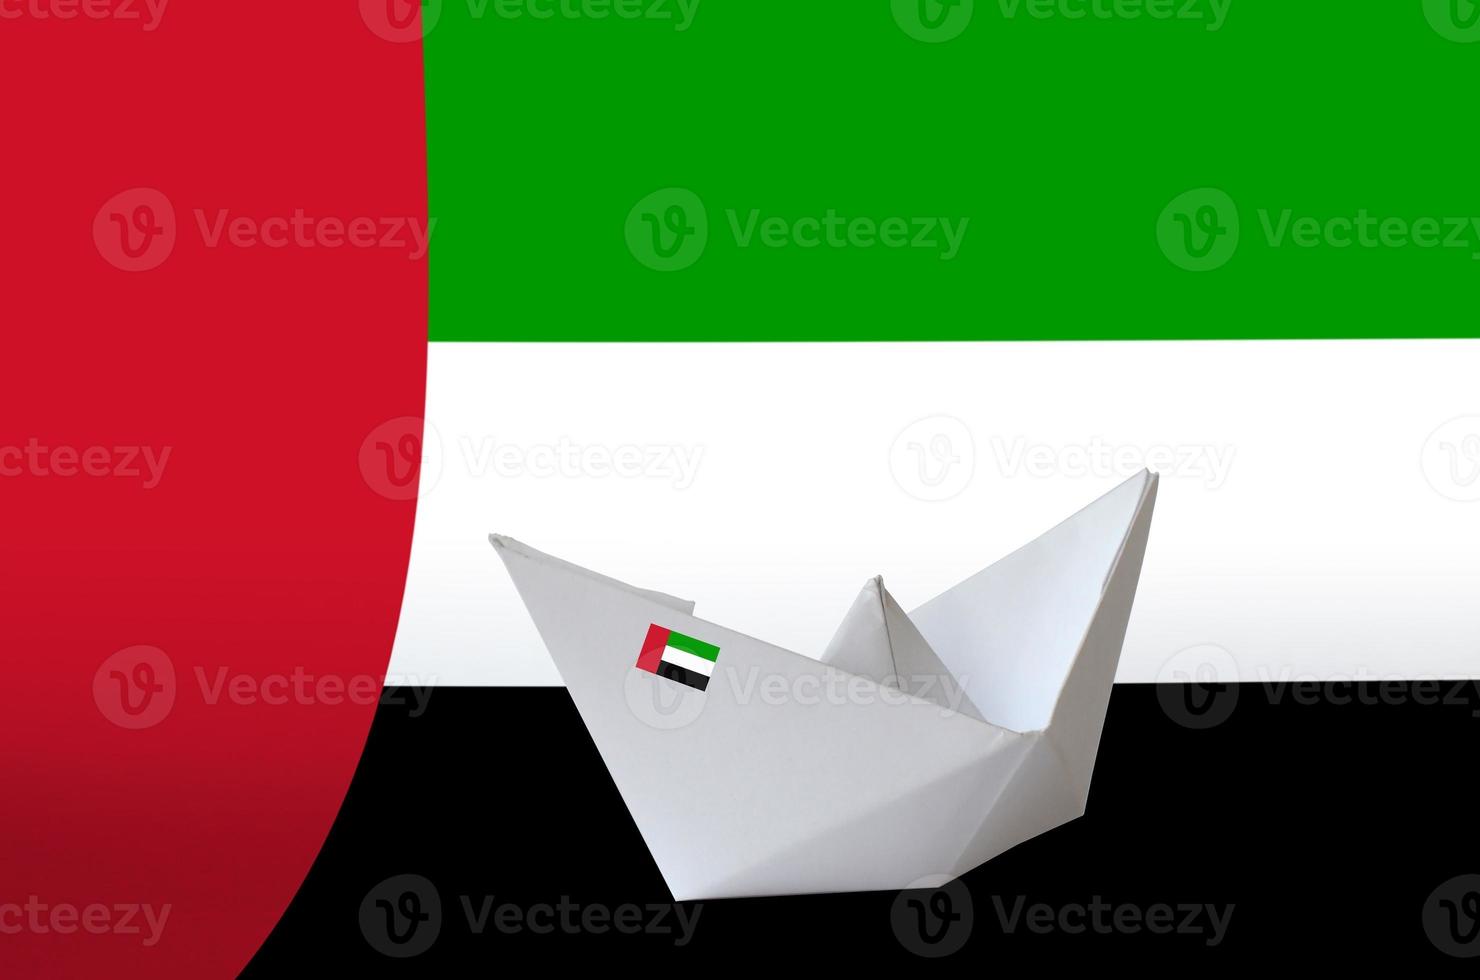 förenad arab emirates flagga avbildad på papper origami fartyg närbild. handgjort konst begrepp foto